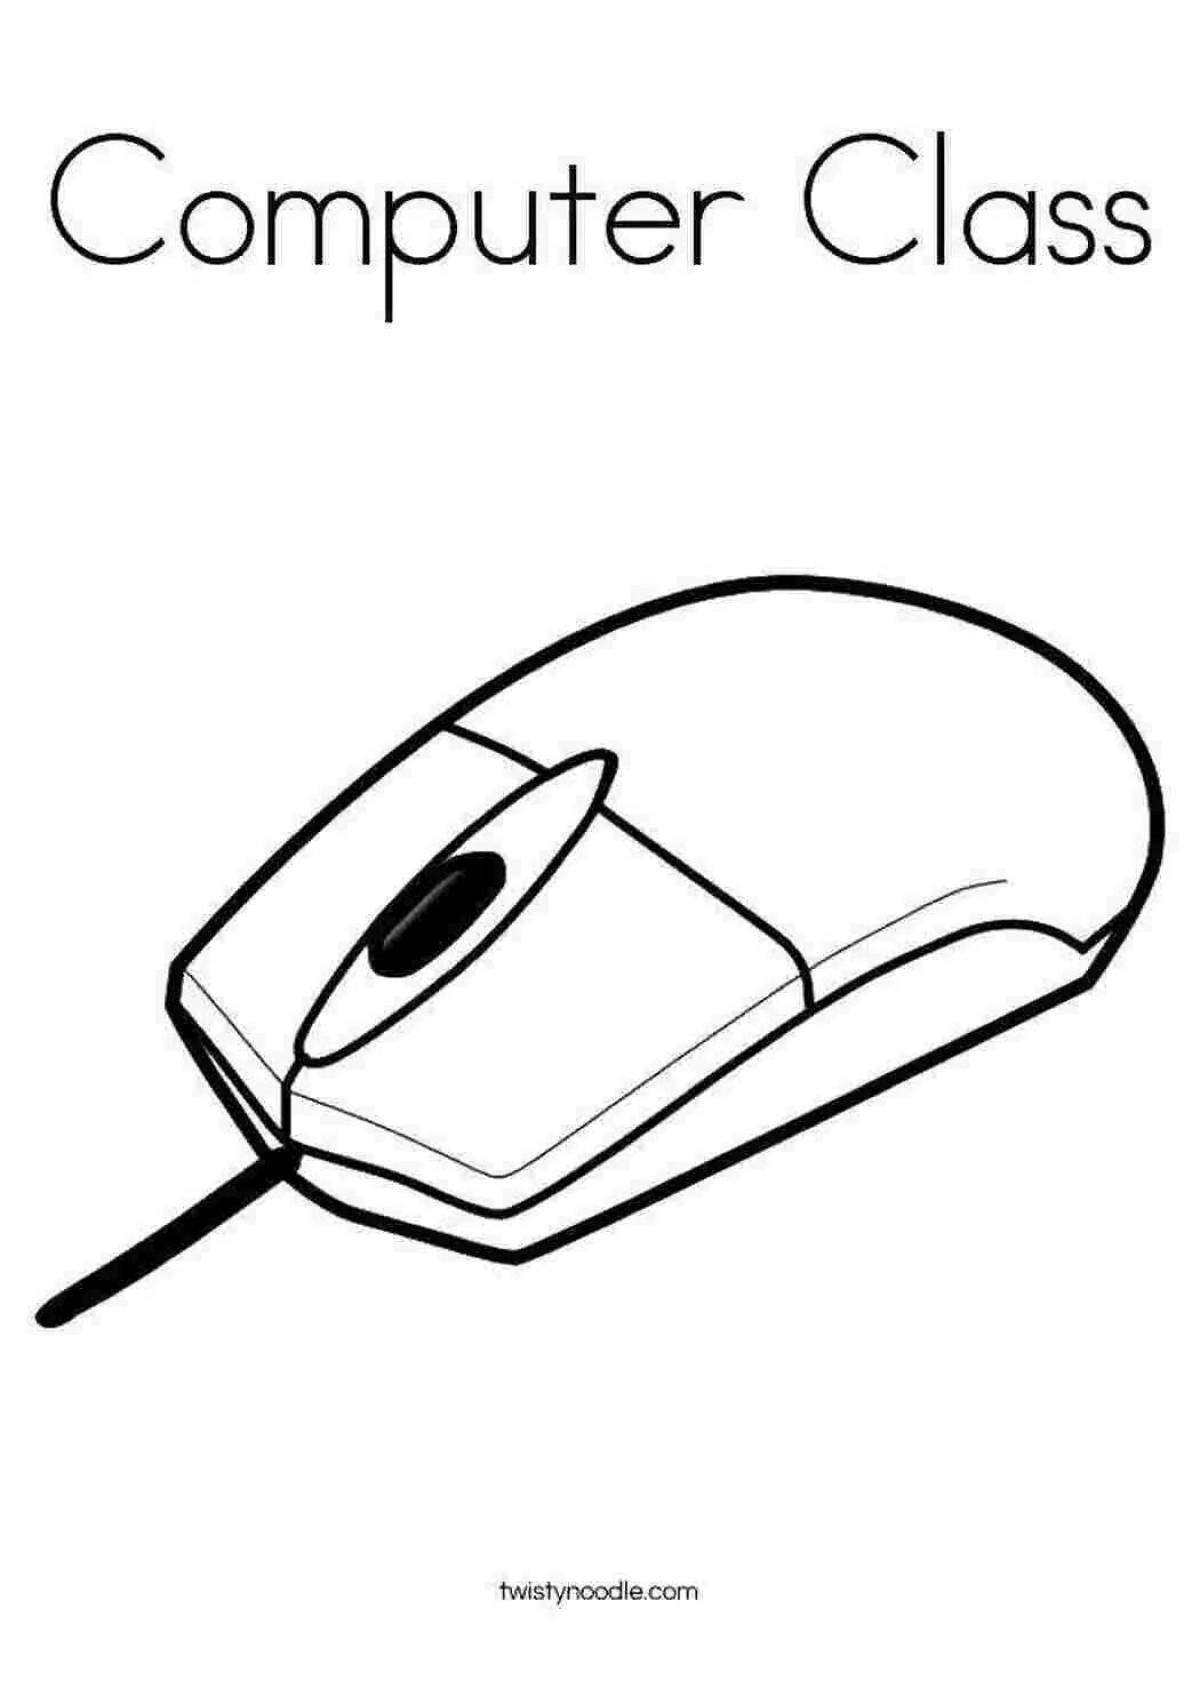 Развлекательная страница рисования компьютерной мышью